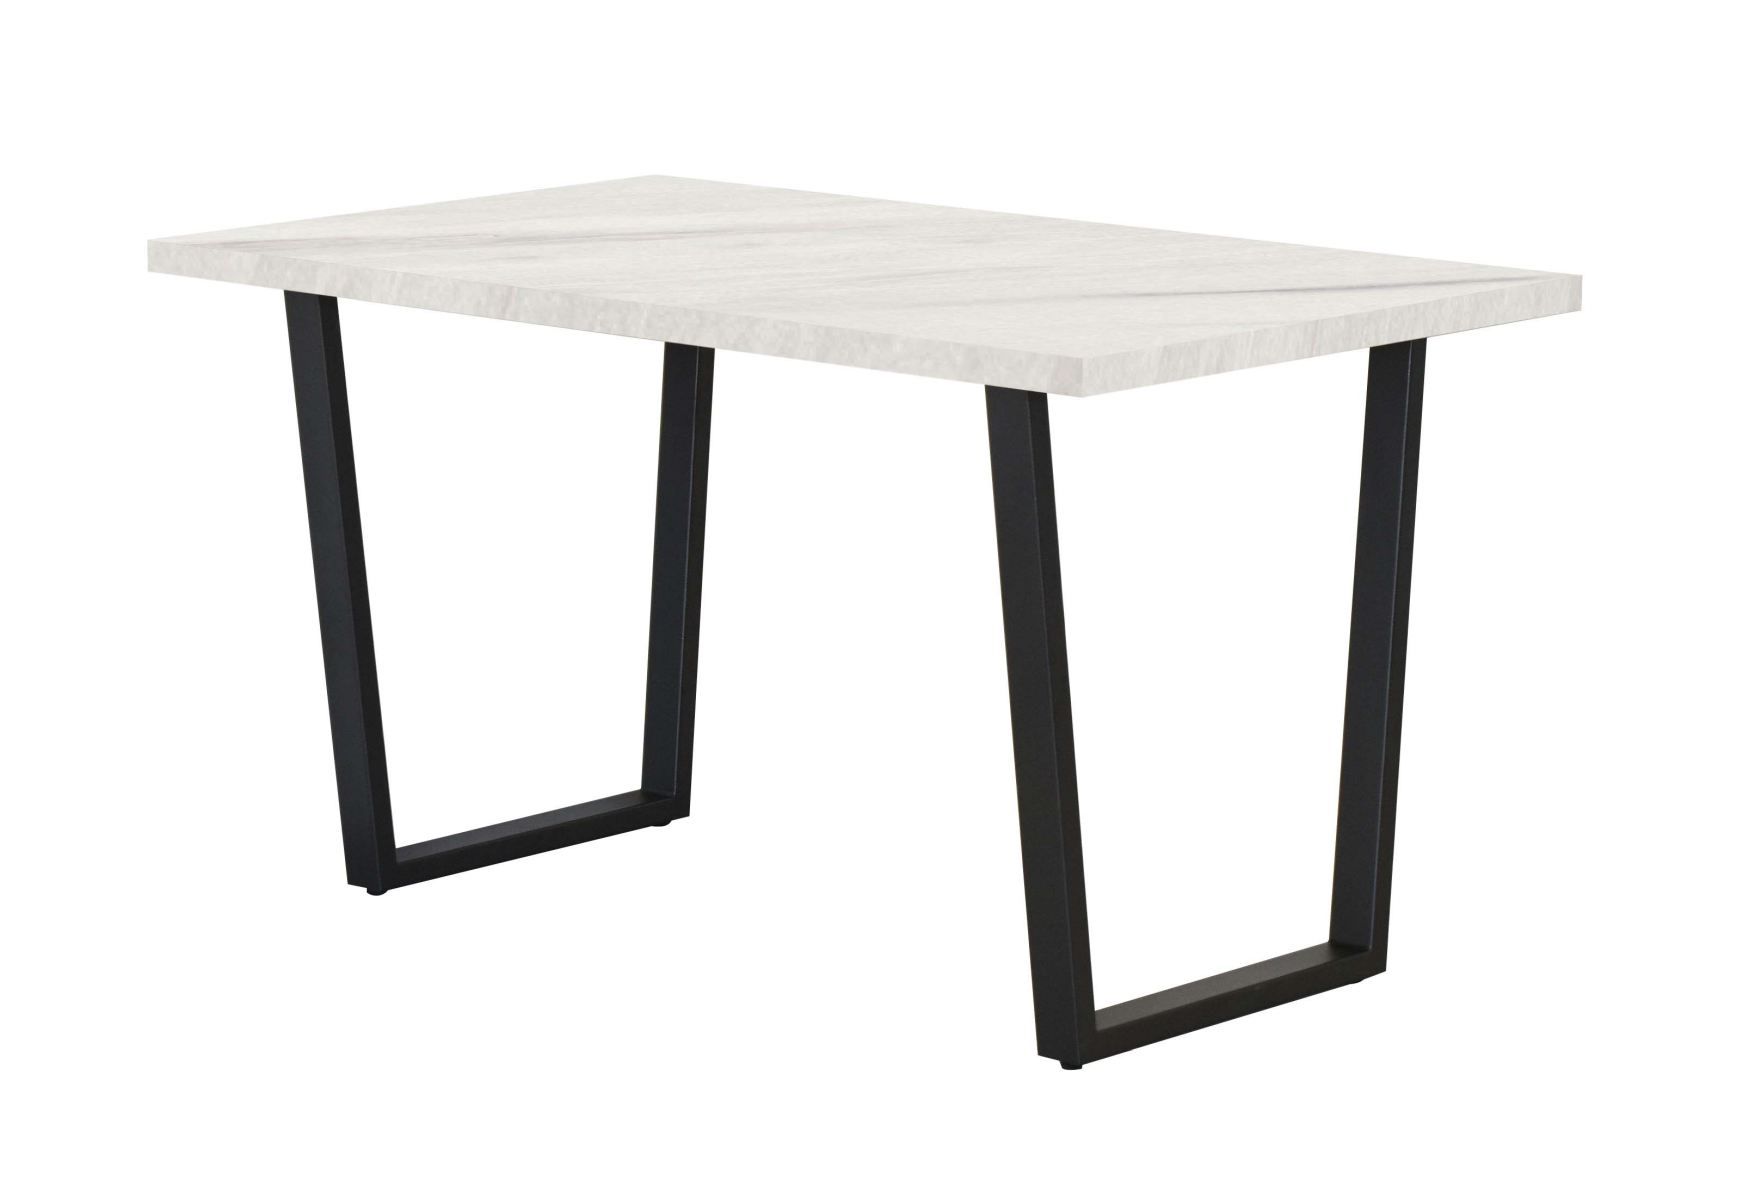 Table de salle à manger Ourense 04, couleur : Marbre blanc / Noir - dimensions : 160 x 90 cm (l x p)